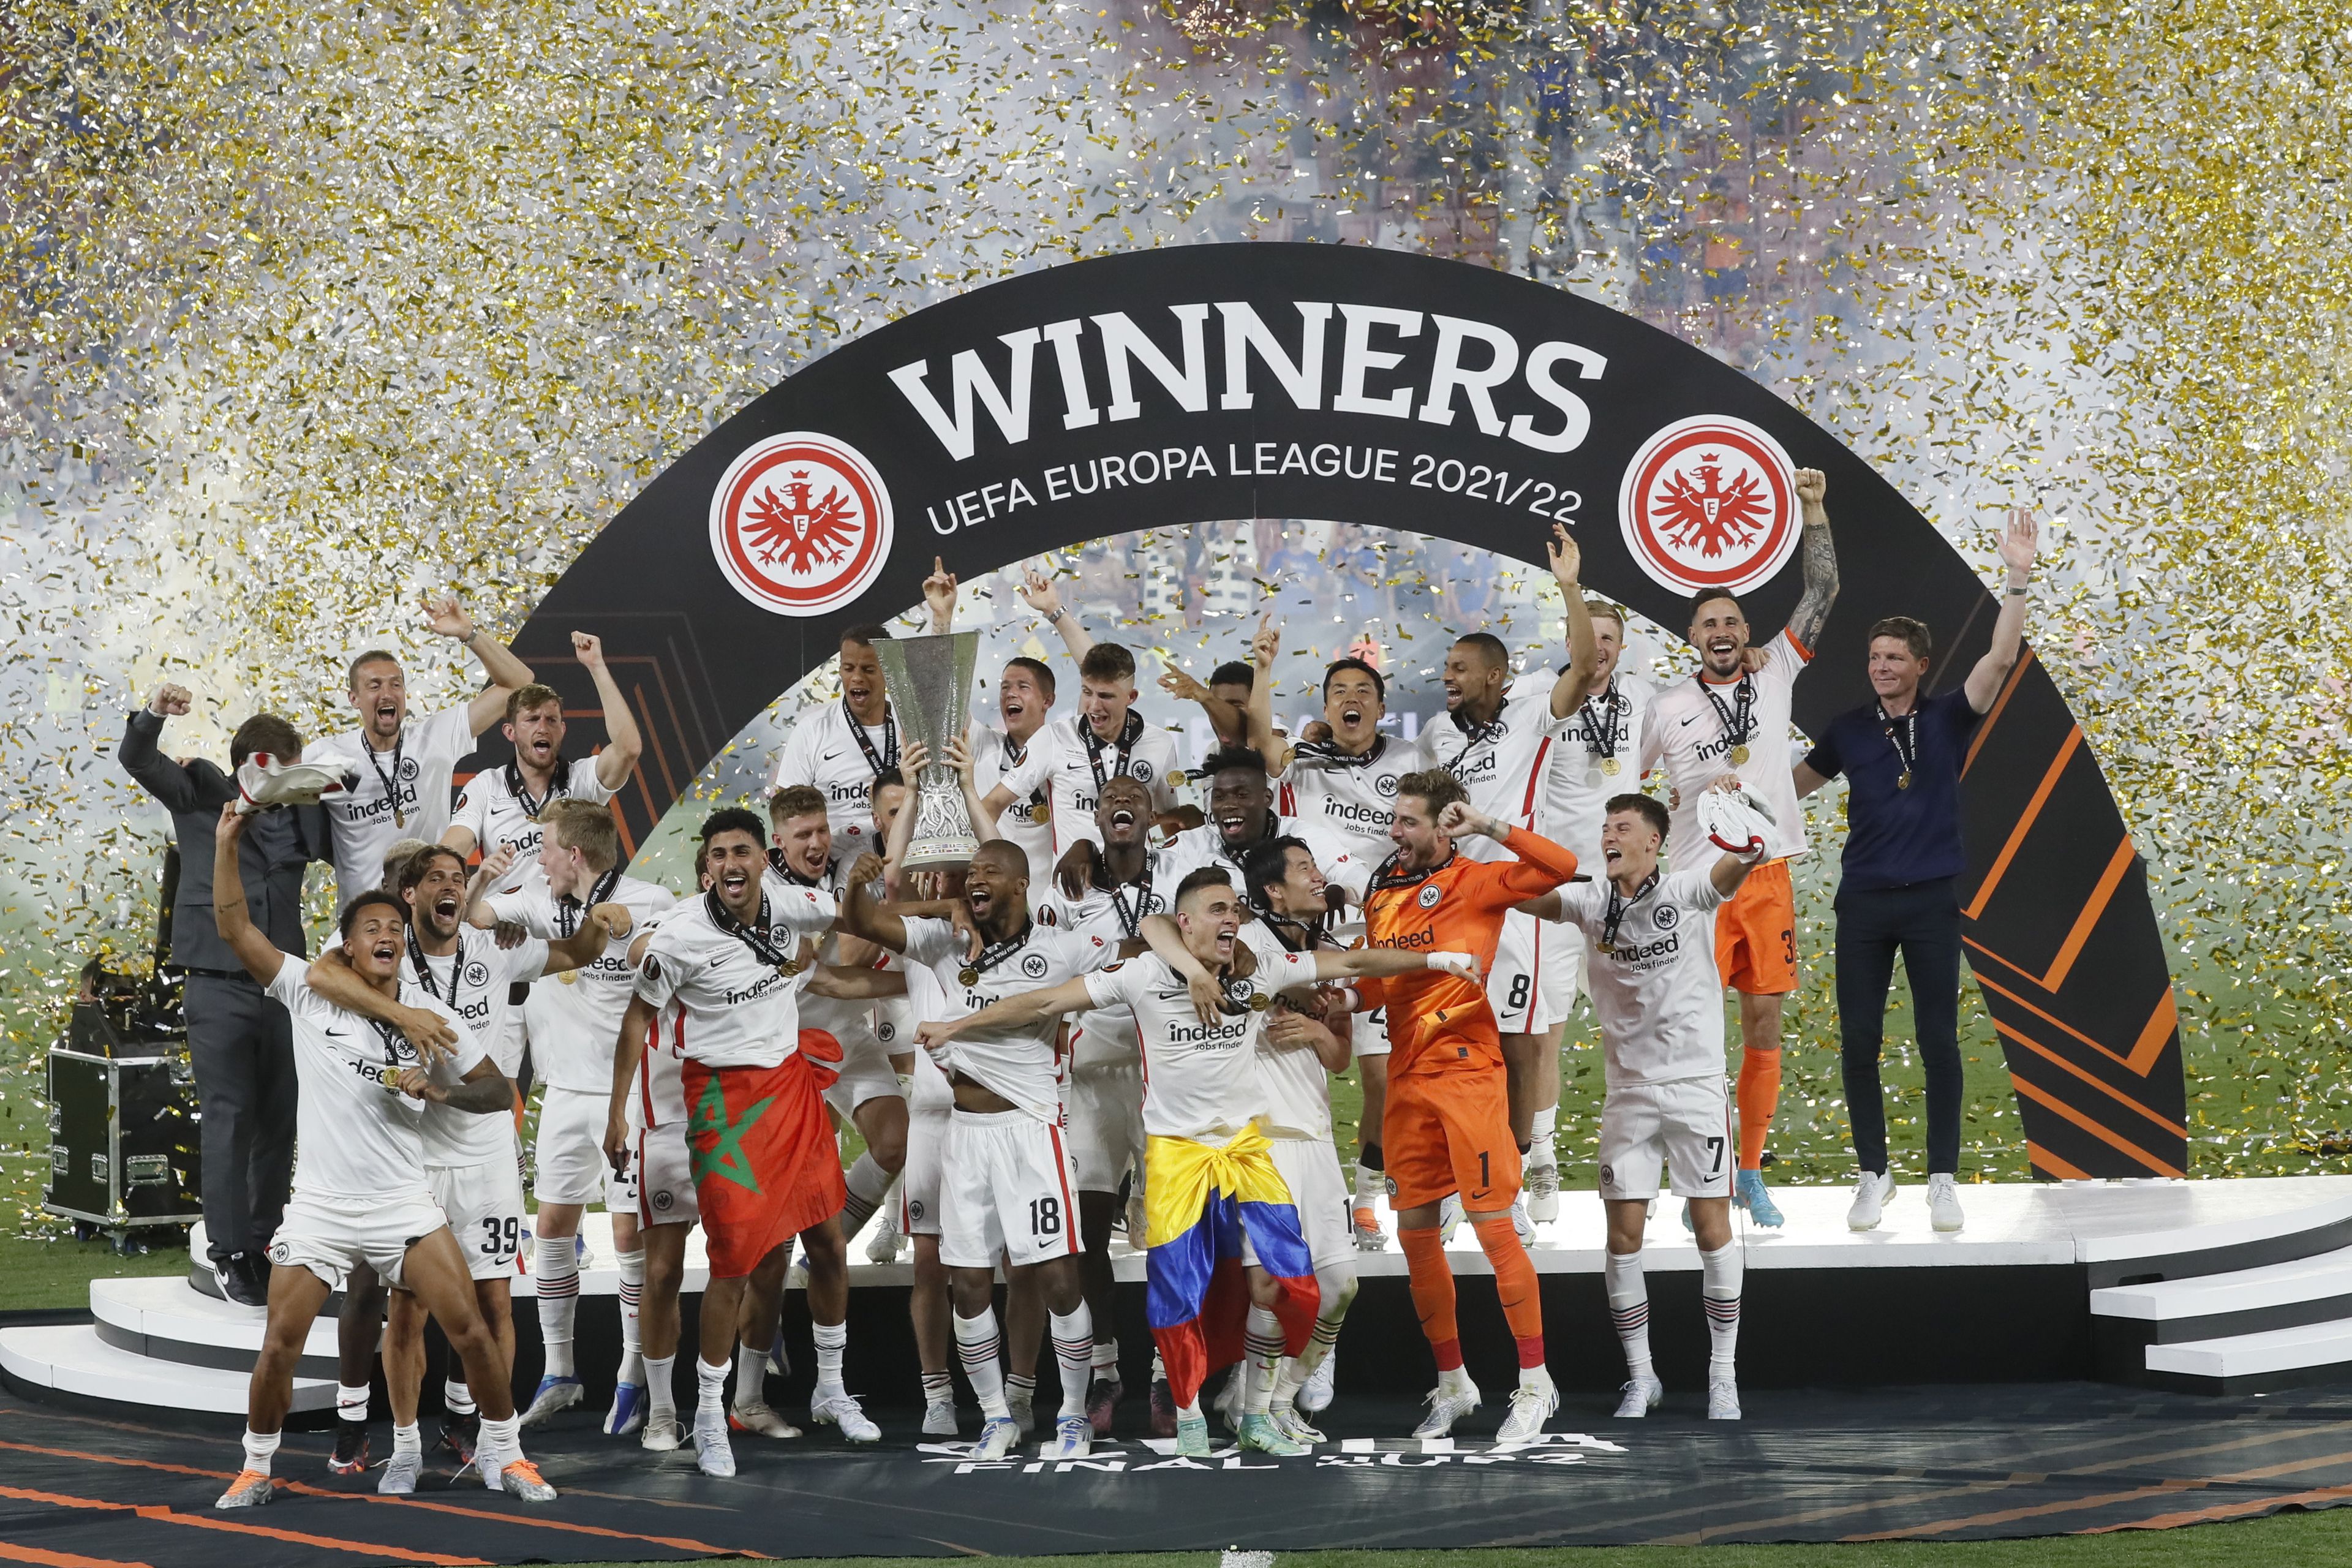 Az Eintracht Frankfurt másodszor nyerte meg a második számú európai futballkupát /Fotó: EPA/Jose Manuel Vidal